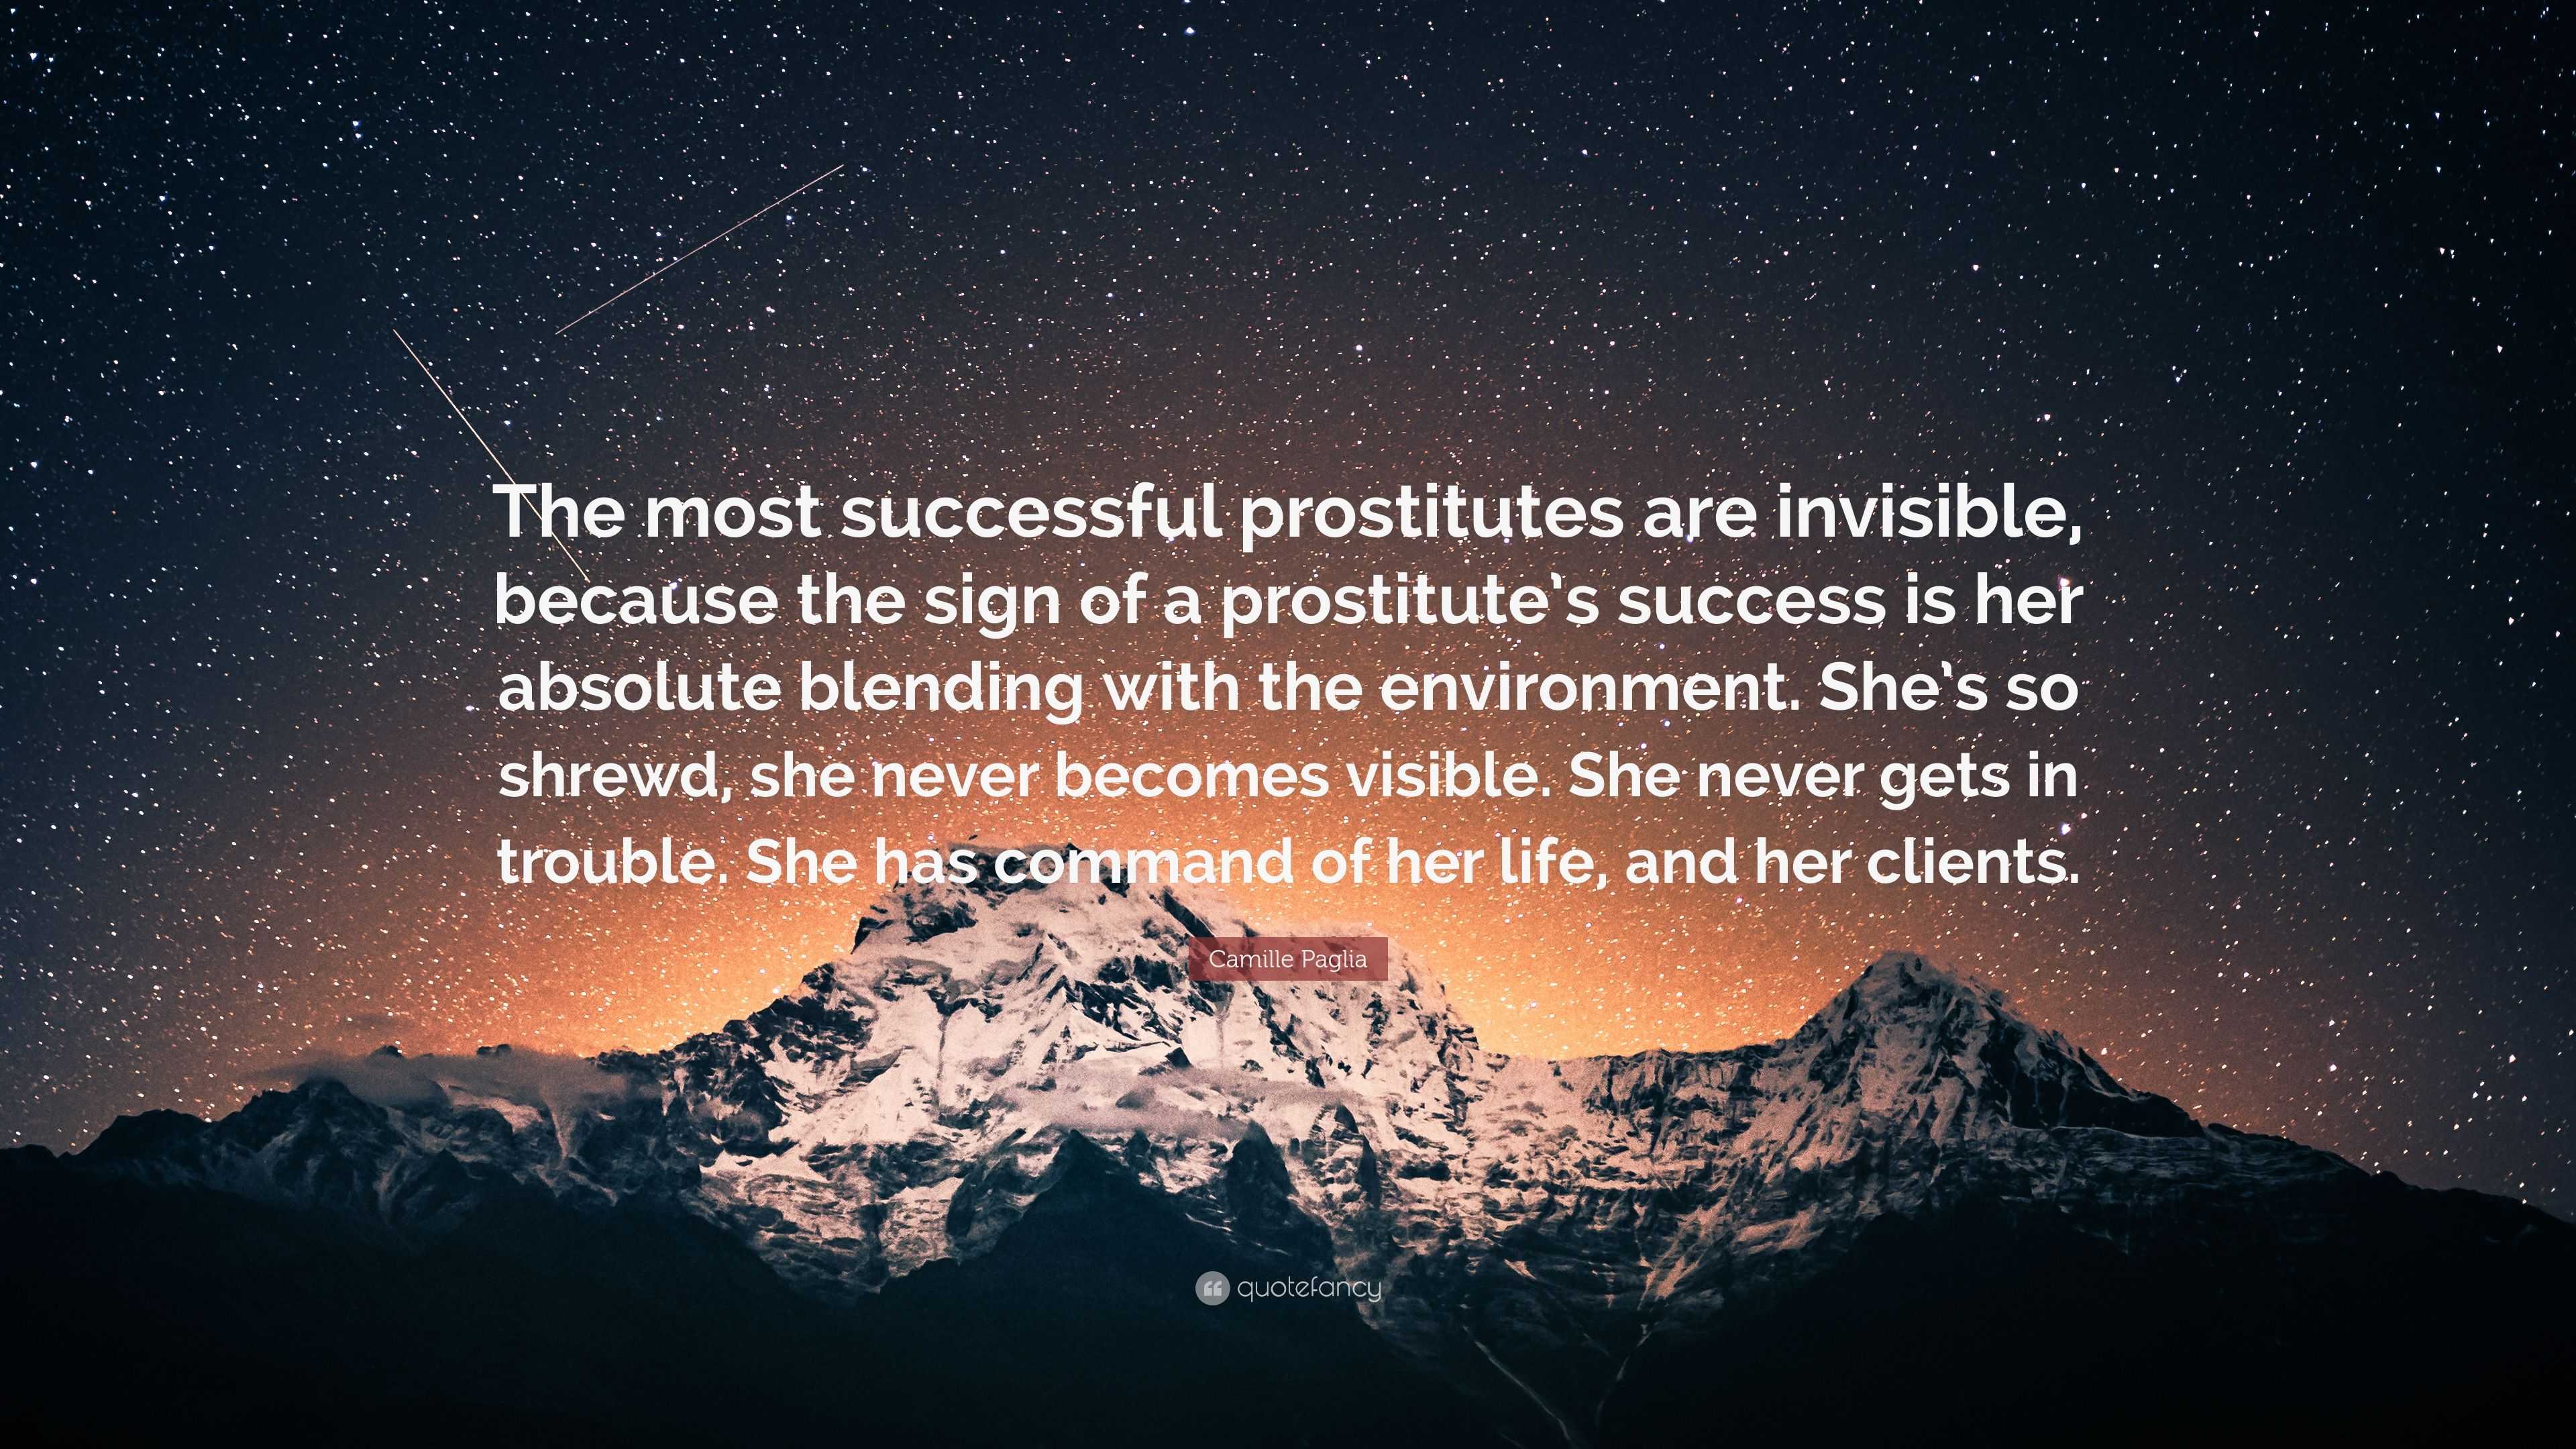 Camille Paglia Quote: “The most successful prostitutes are